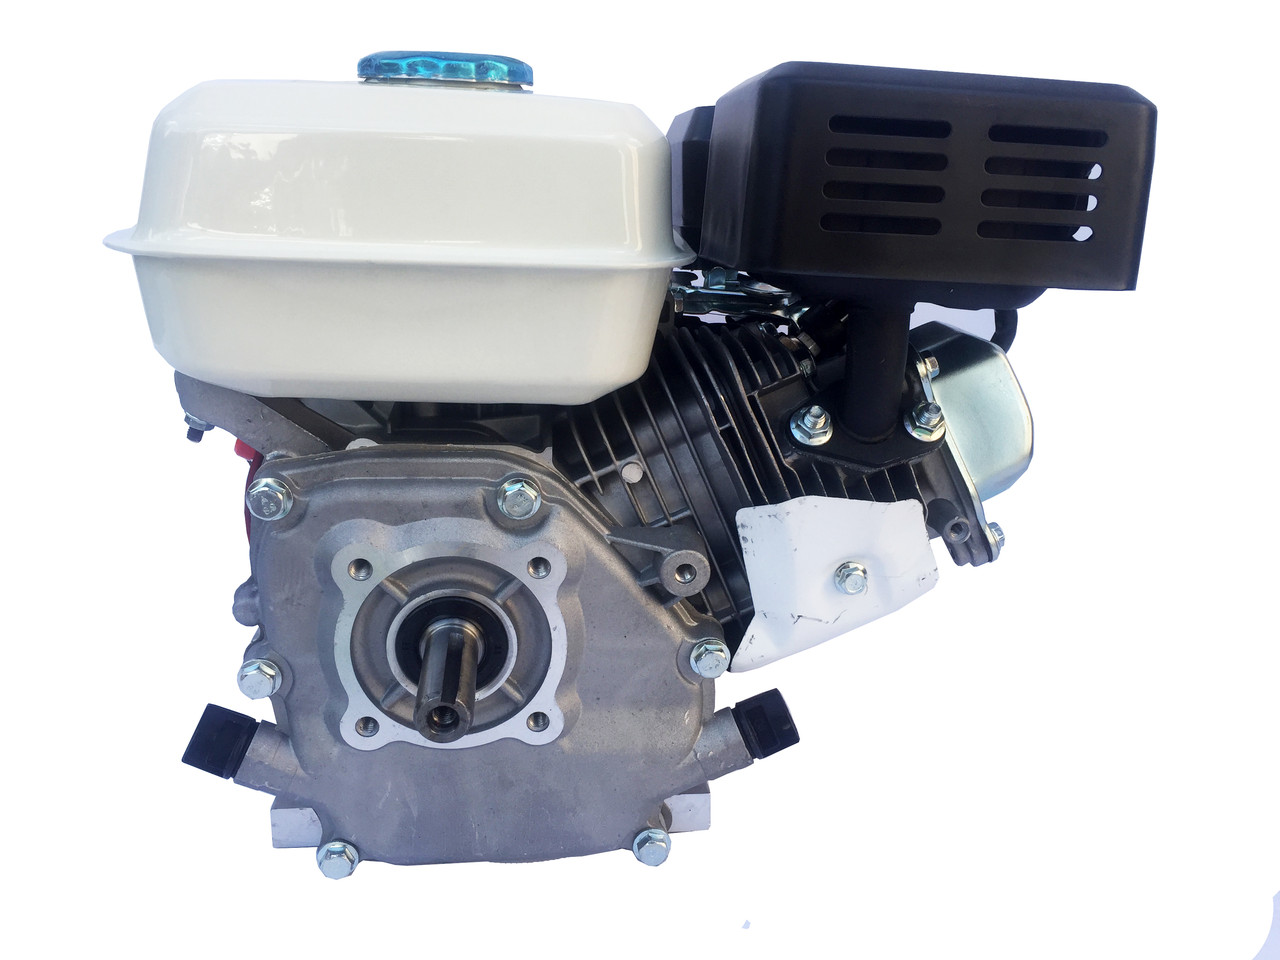 LEX двигатель внутреннего сгорания 6.5 HP 168F-2 вал 19 и 20